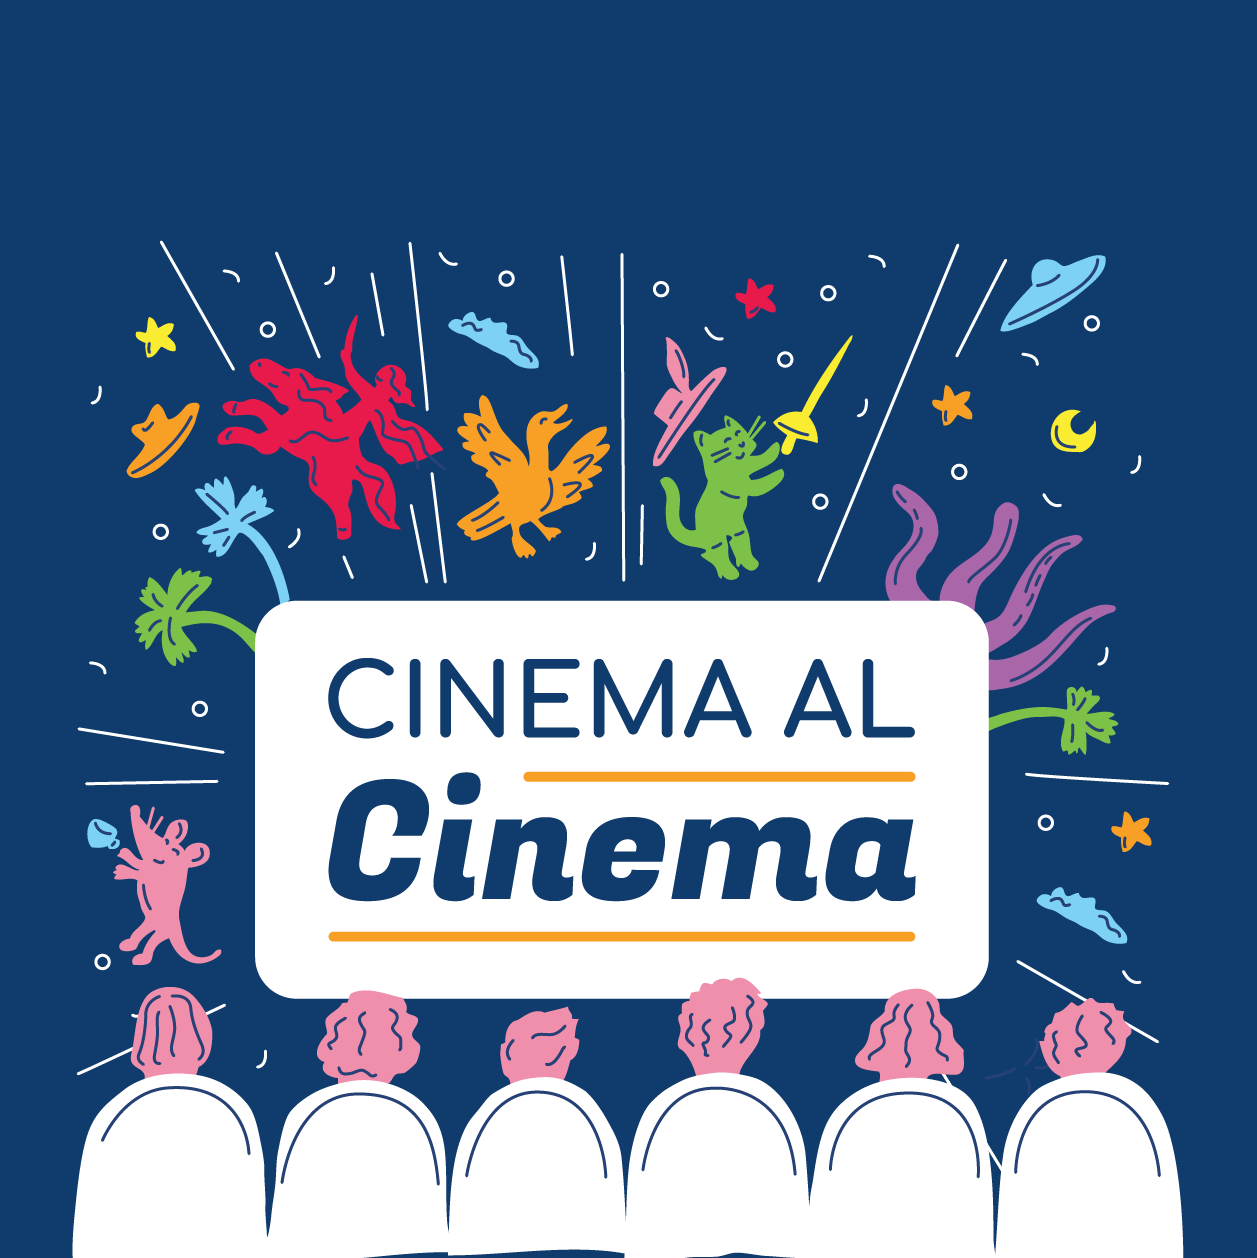 Cinema al cinema Piemonte